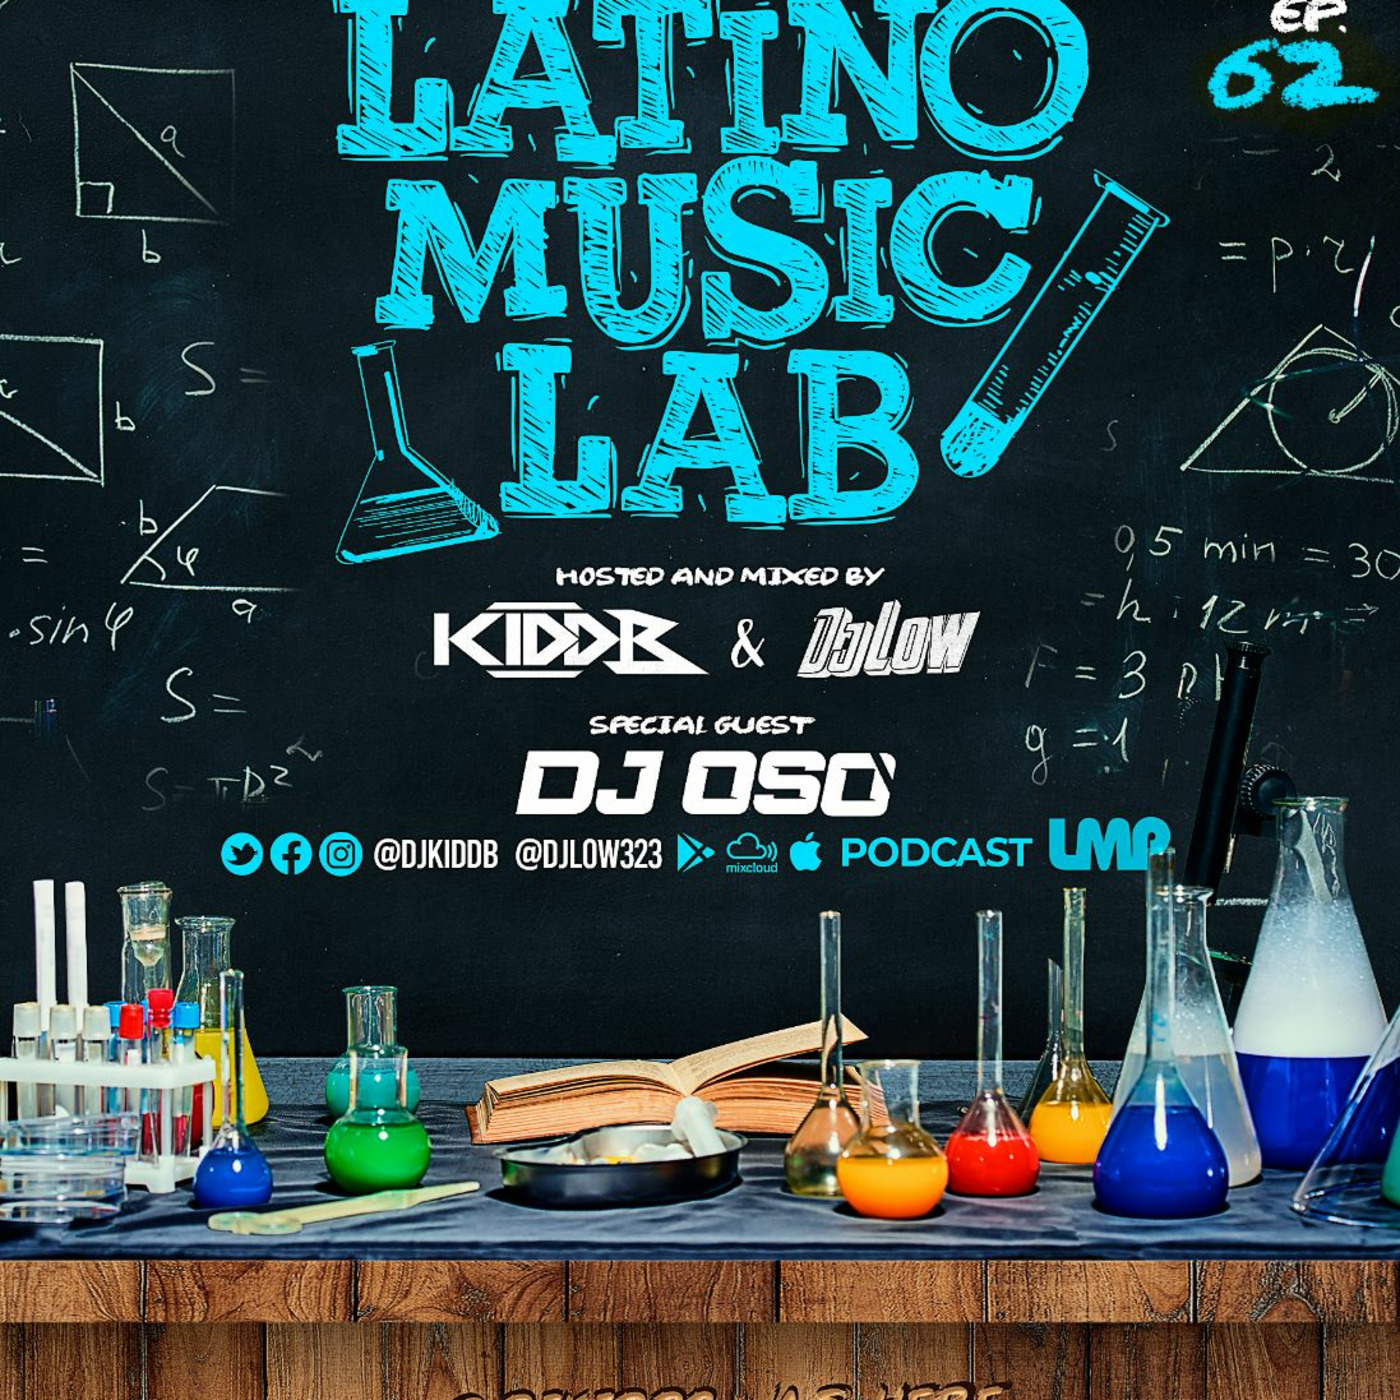 Episode 18: Latino Music Lab EP. 62 Ft. ((DJ Oso))